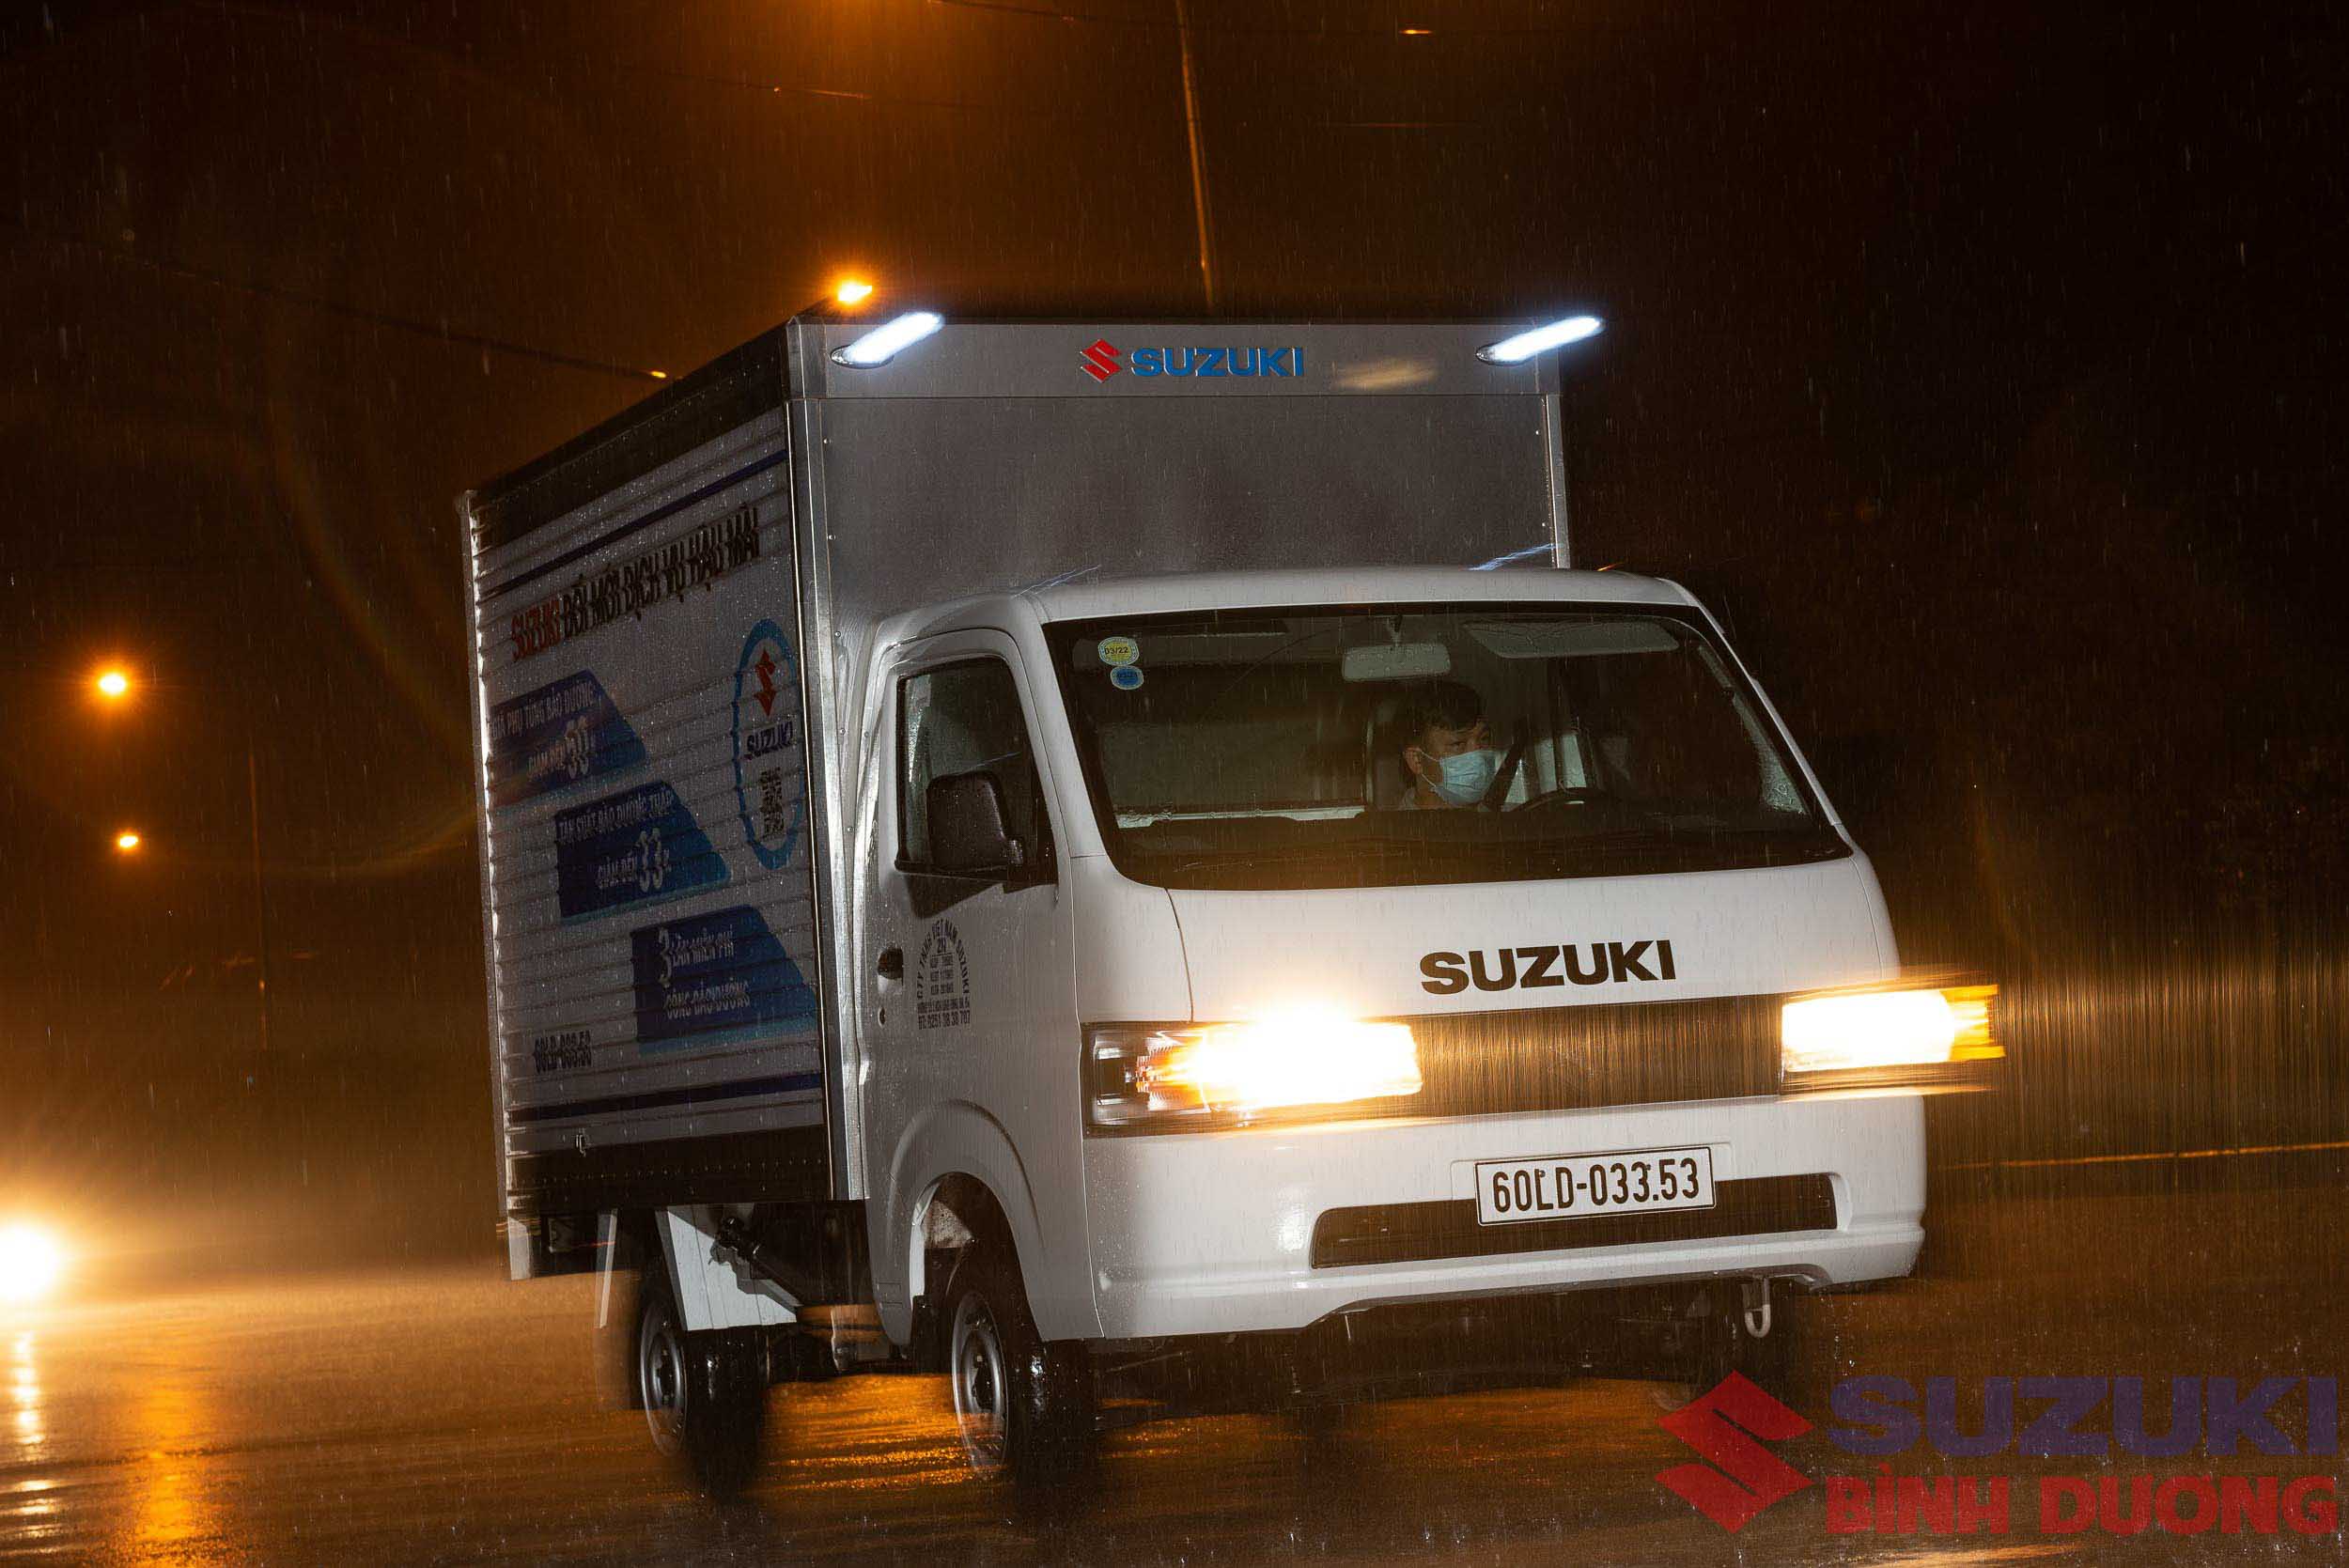 xe tải nhỏ suzuki